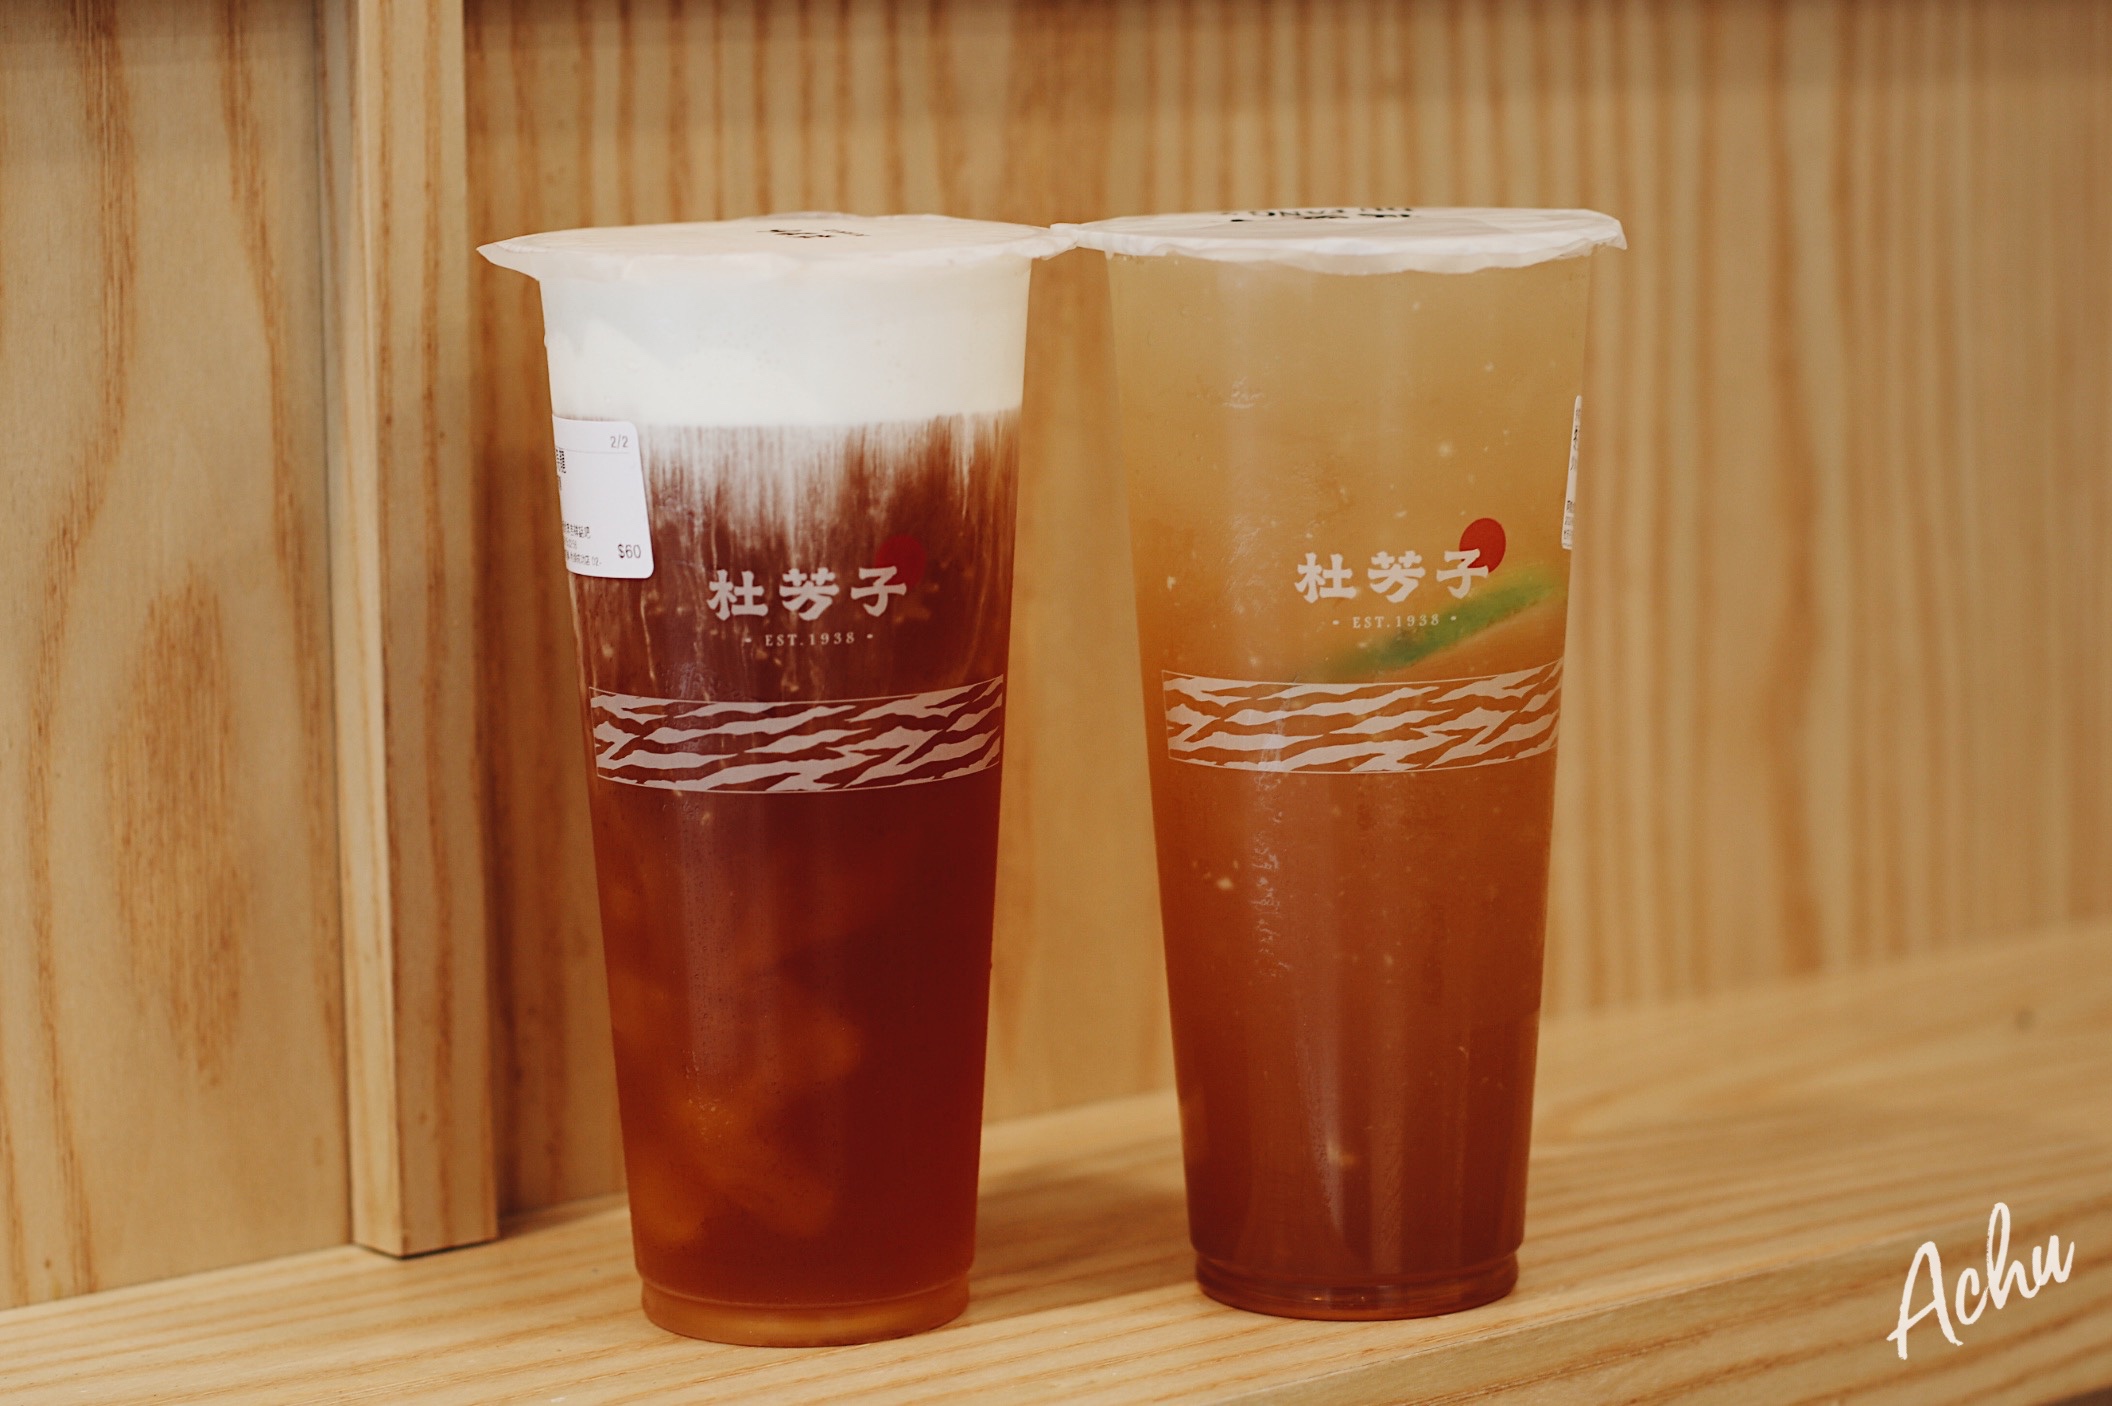 【飲料推薦】杜芳子古味茶舖 回憶中的傳承者 推薦烏龍鮮奶凍 (菜單) @阿朱的日常